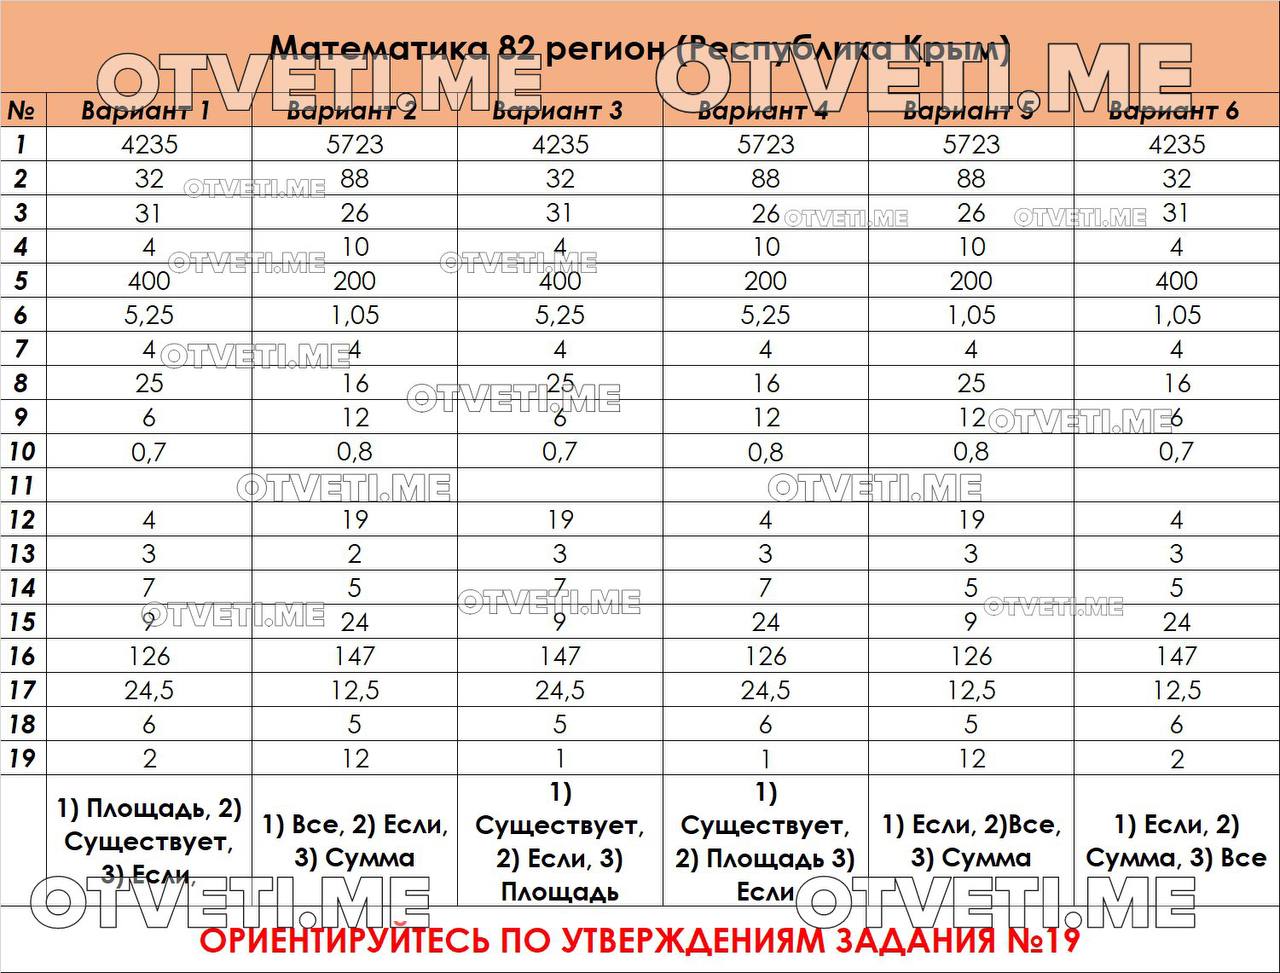 Русский язык огэ ответы телеграмм фото 61